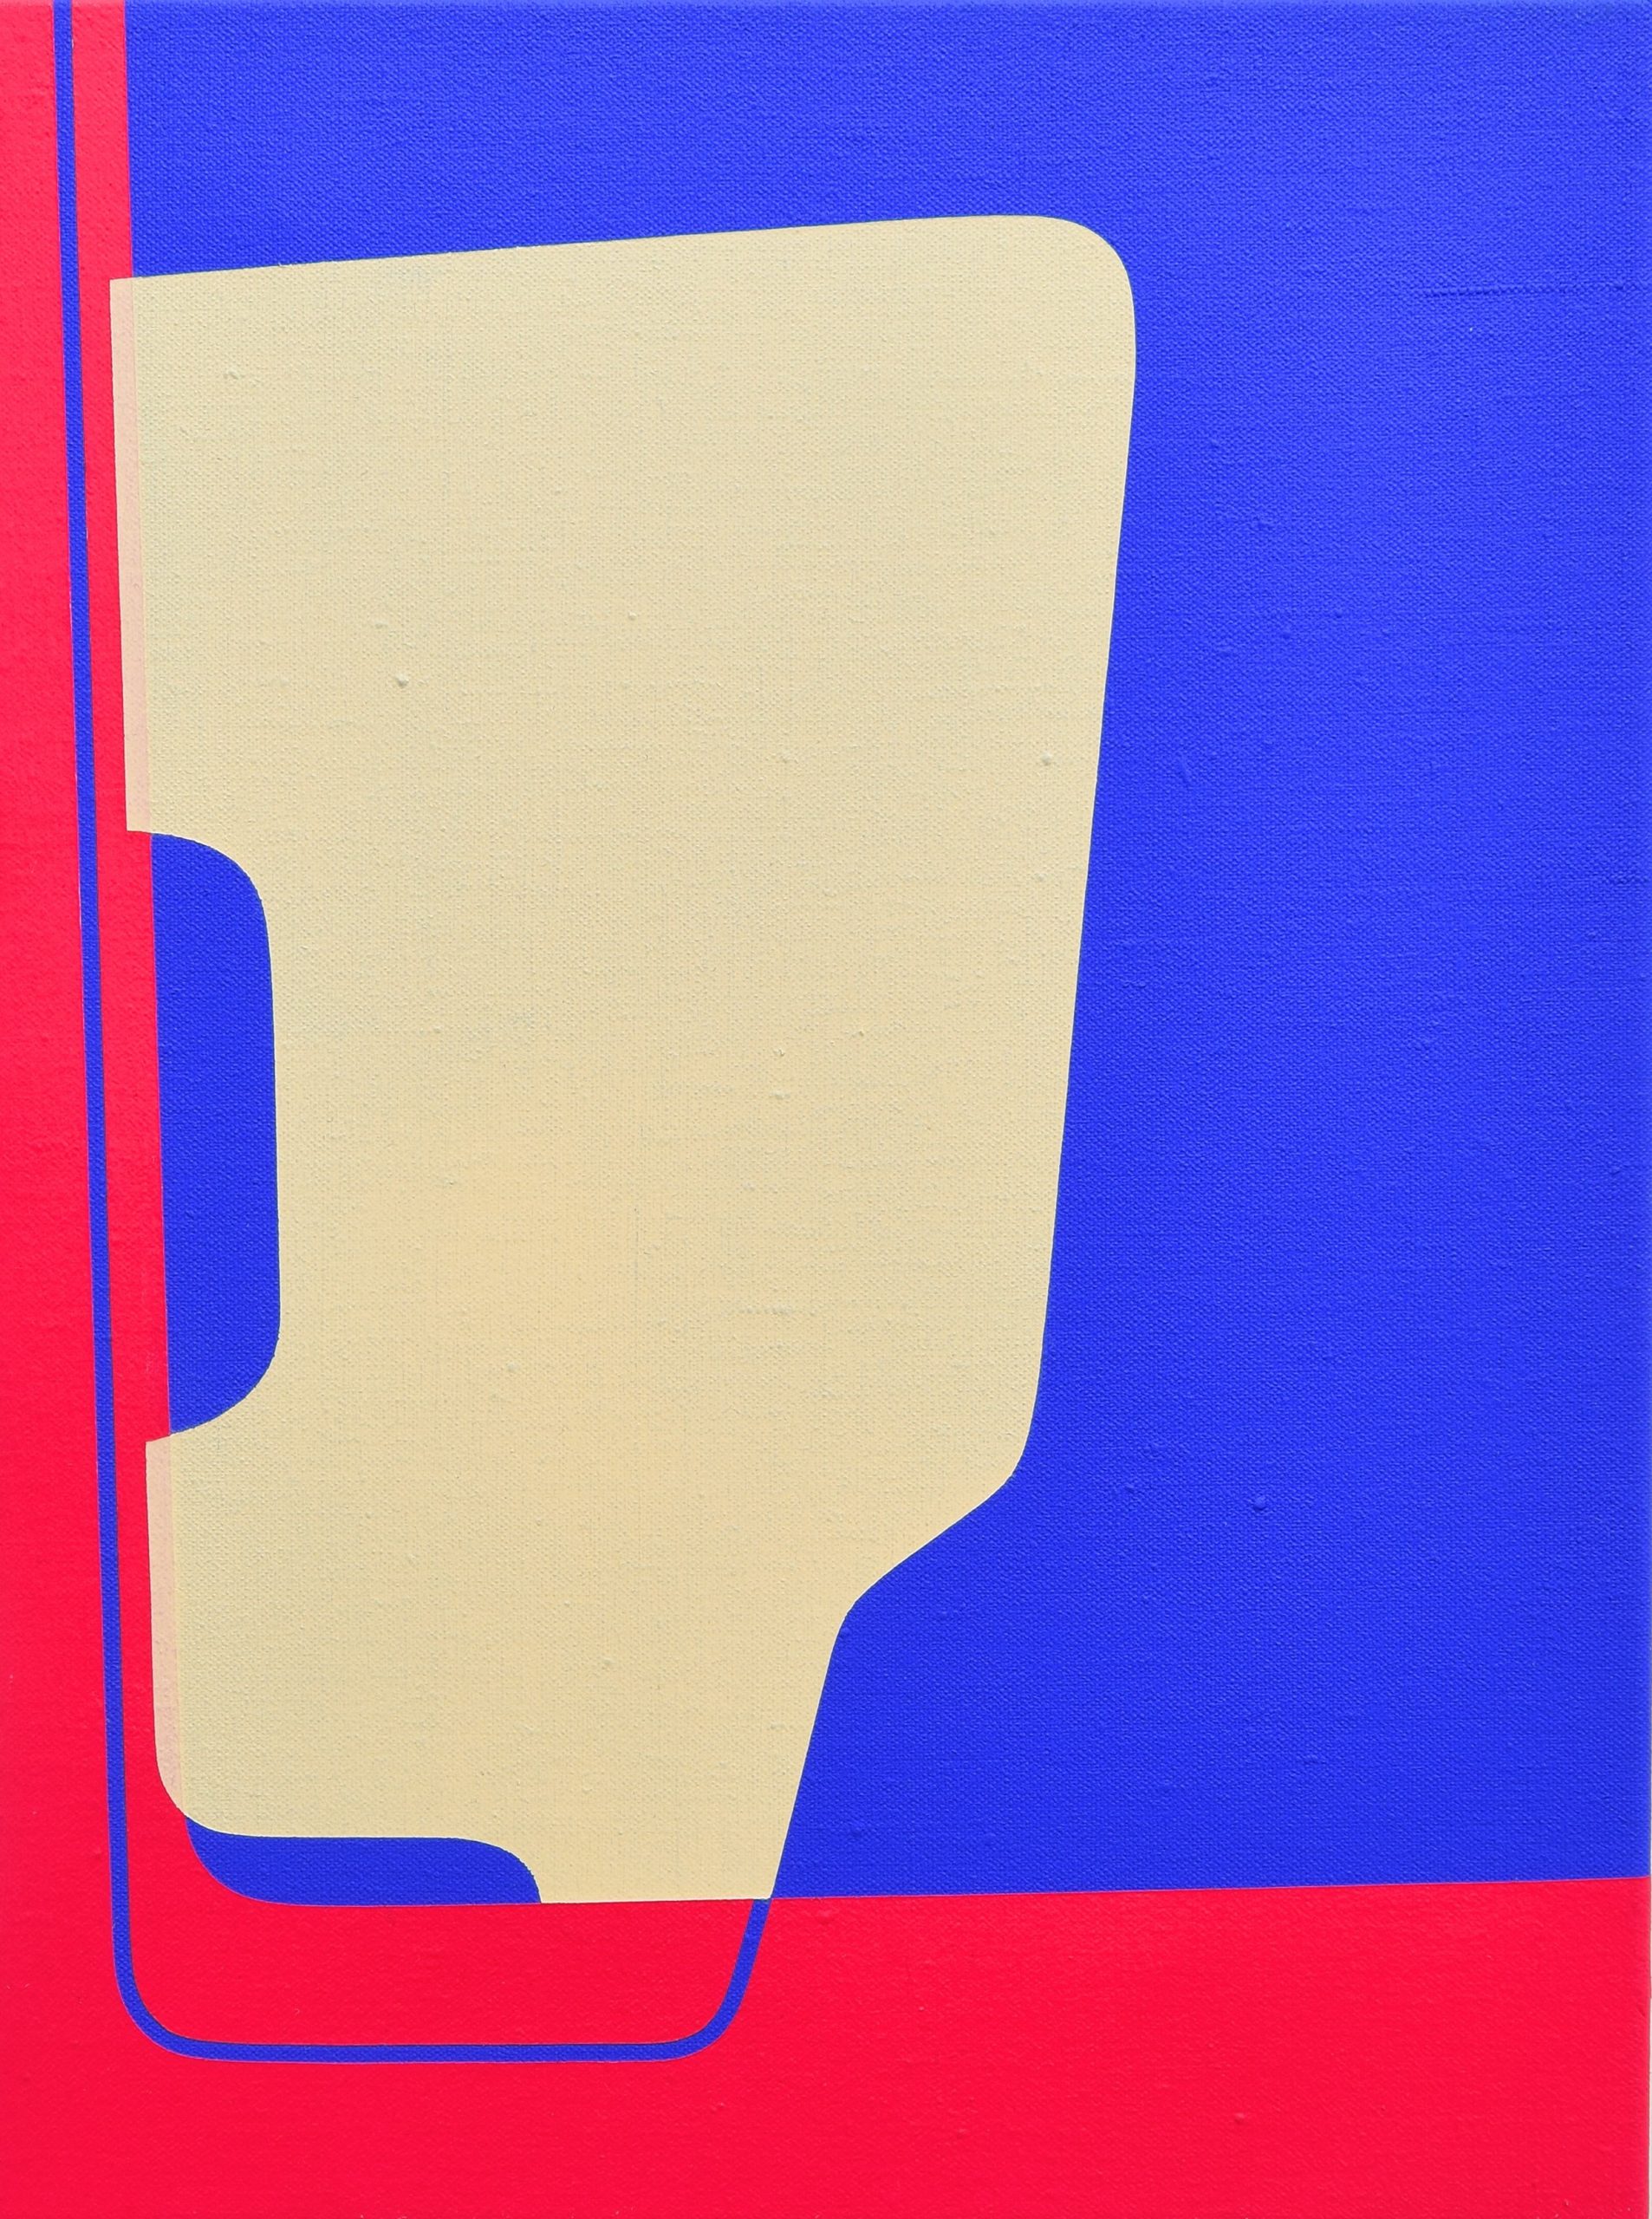 Matthew Browne 'Opia 9' vinyl tempera and oil on linen 40.5 x 30cm $4,000